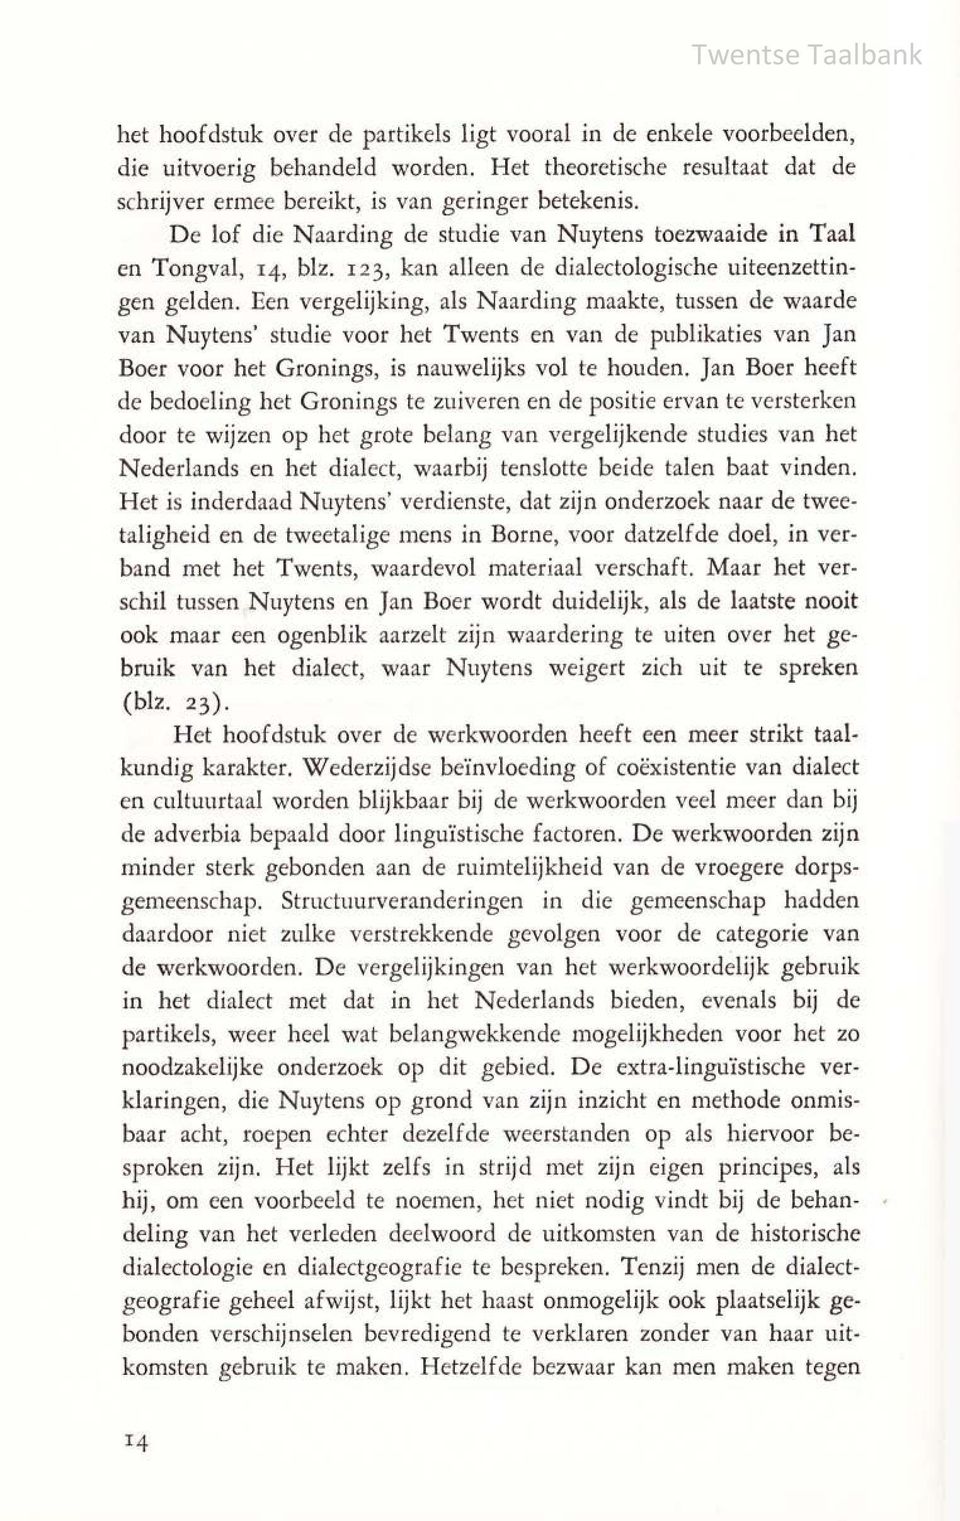 Een vergelijking, als Naarding maakte, tussen de waarde van Nuytens' studie voor het Twents en van de publikaties van Jan Boer voor het Gronings, is nauwelijks vol te houden.